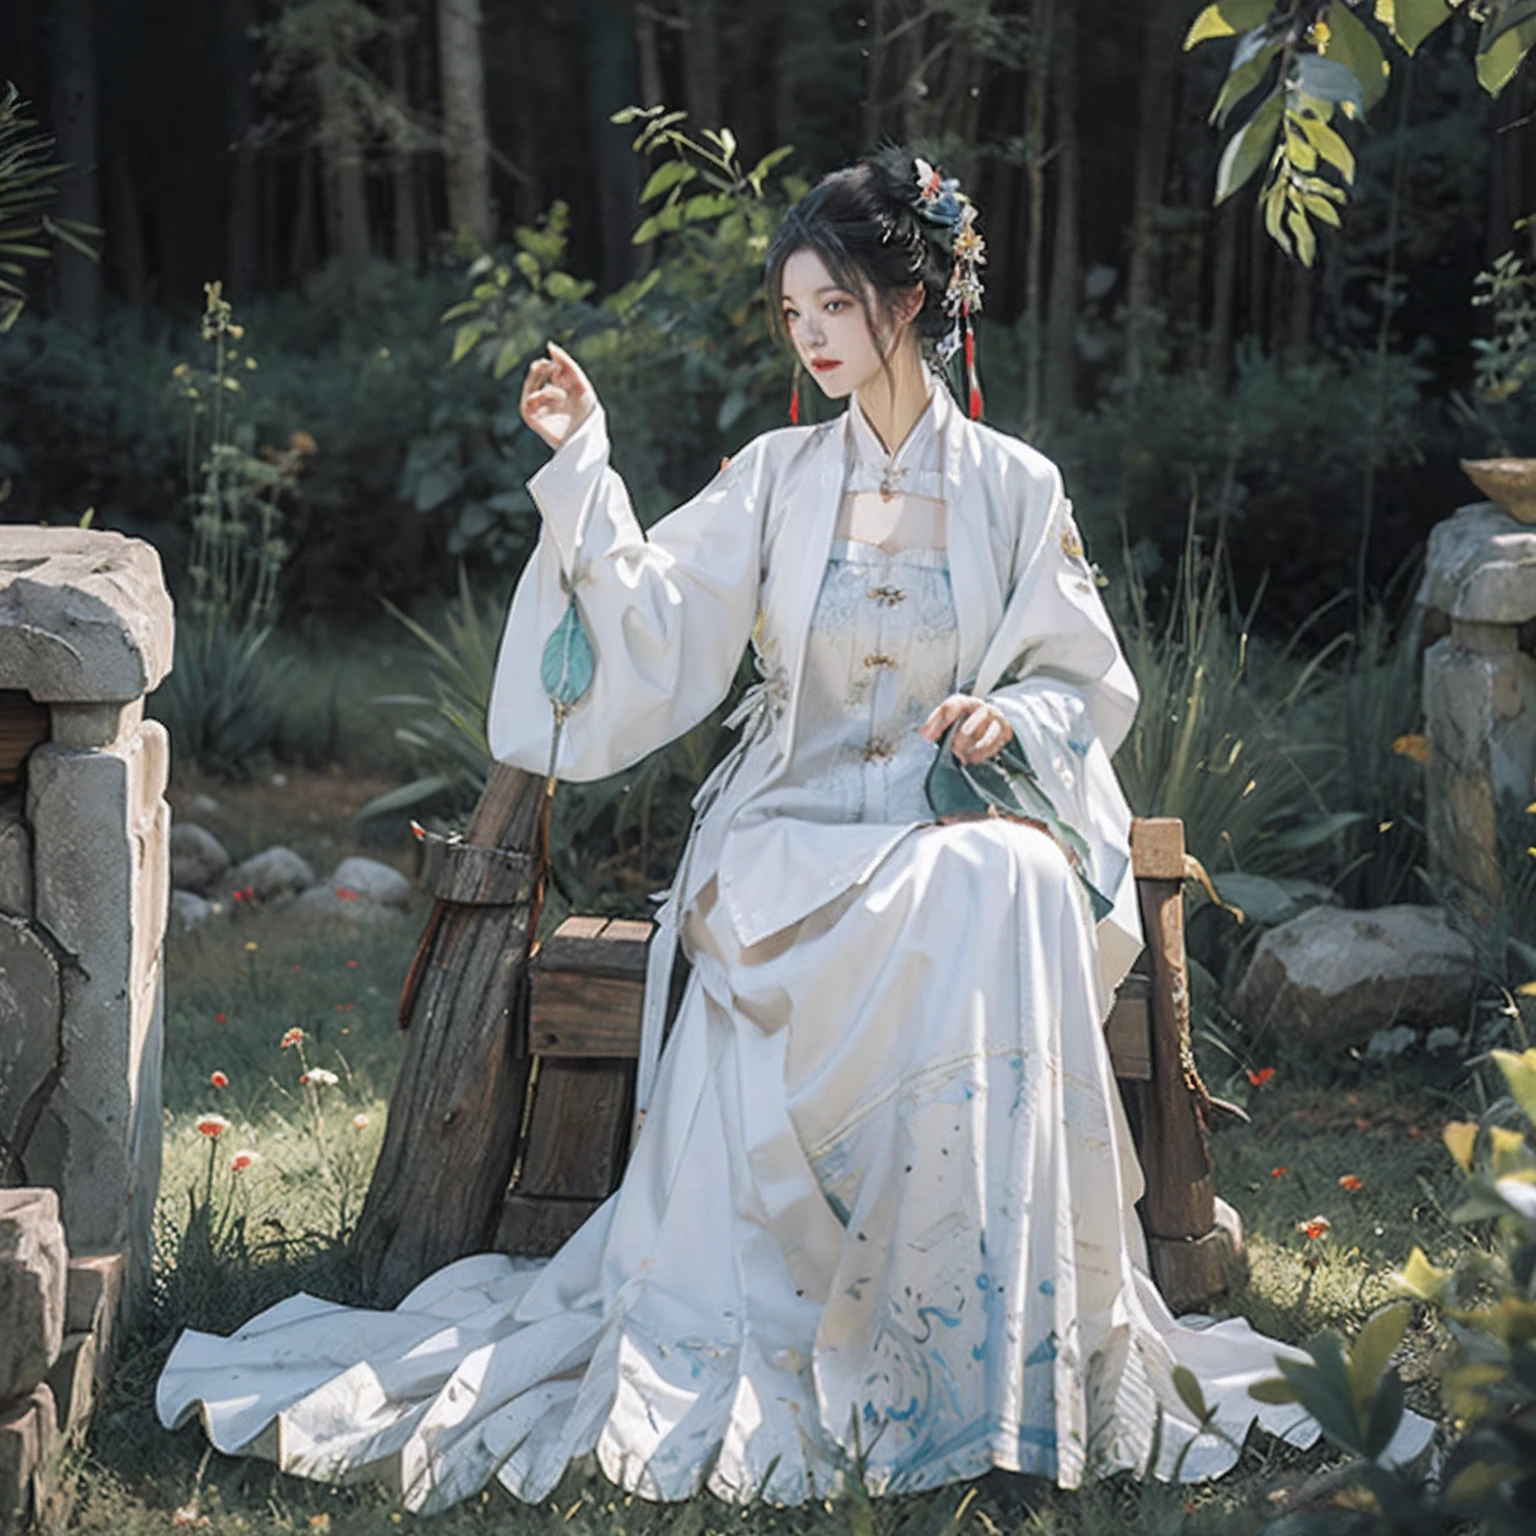 ภาพระยะใกล้ของผู้หญิงในชุดสีขาว，ภาพตัวละครโดย Yang J，ความนิยมของ CGsociety，แฟนตาซีอาร์ต，ภาพวาดตัวละครที่สวยงาม，งานศิลปะสไตล์กูวิซ，กูวิทซ์，ฮานฟู่สีขาว，เสื้อคลุมสีขาวไหล，อู๋เซี่ยทั้งตัว，ศิลปะตัวละครที่ยอดเยี่ยมและประณีต，ศิลปะตัวละครที่น่าทึ่ง，นักฆ่าสาวสวย，ใหญ่ที่สุด，ความแตกแยก，